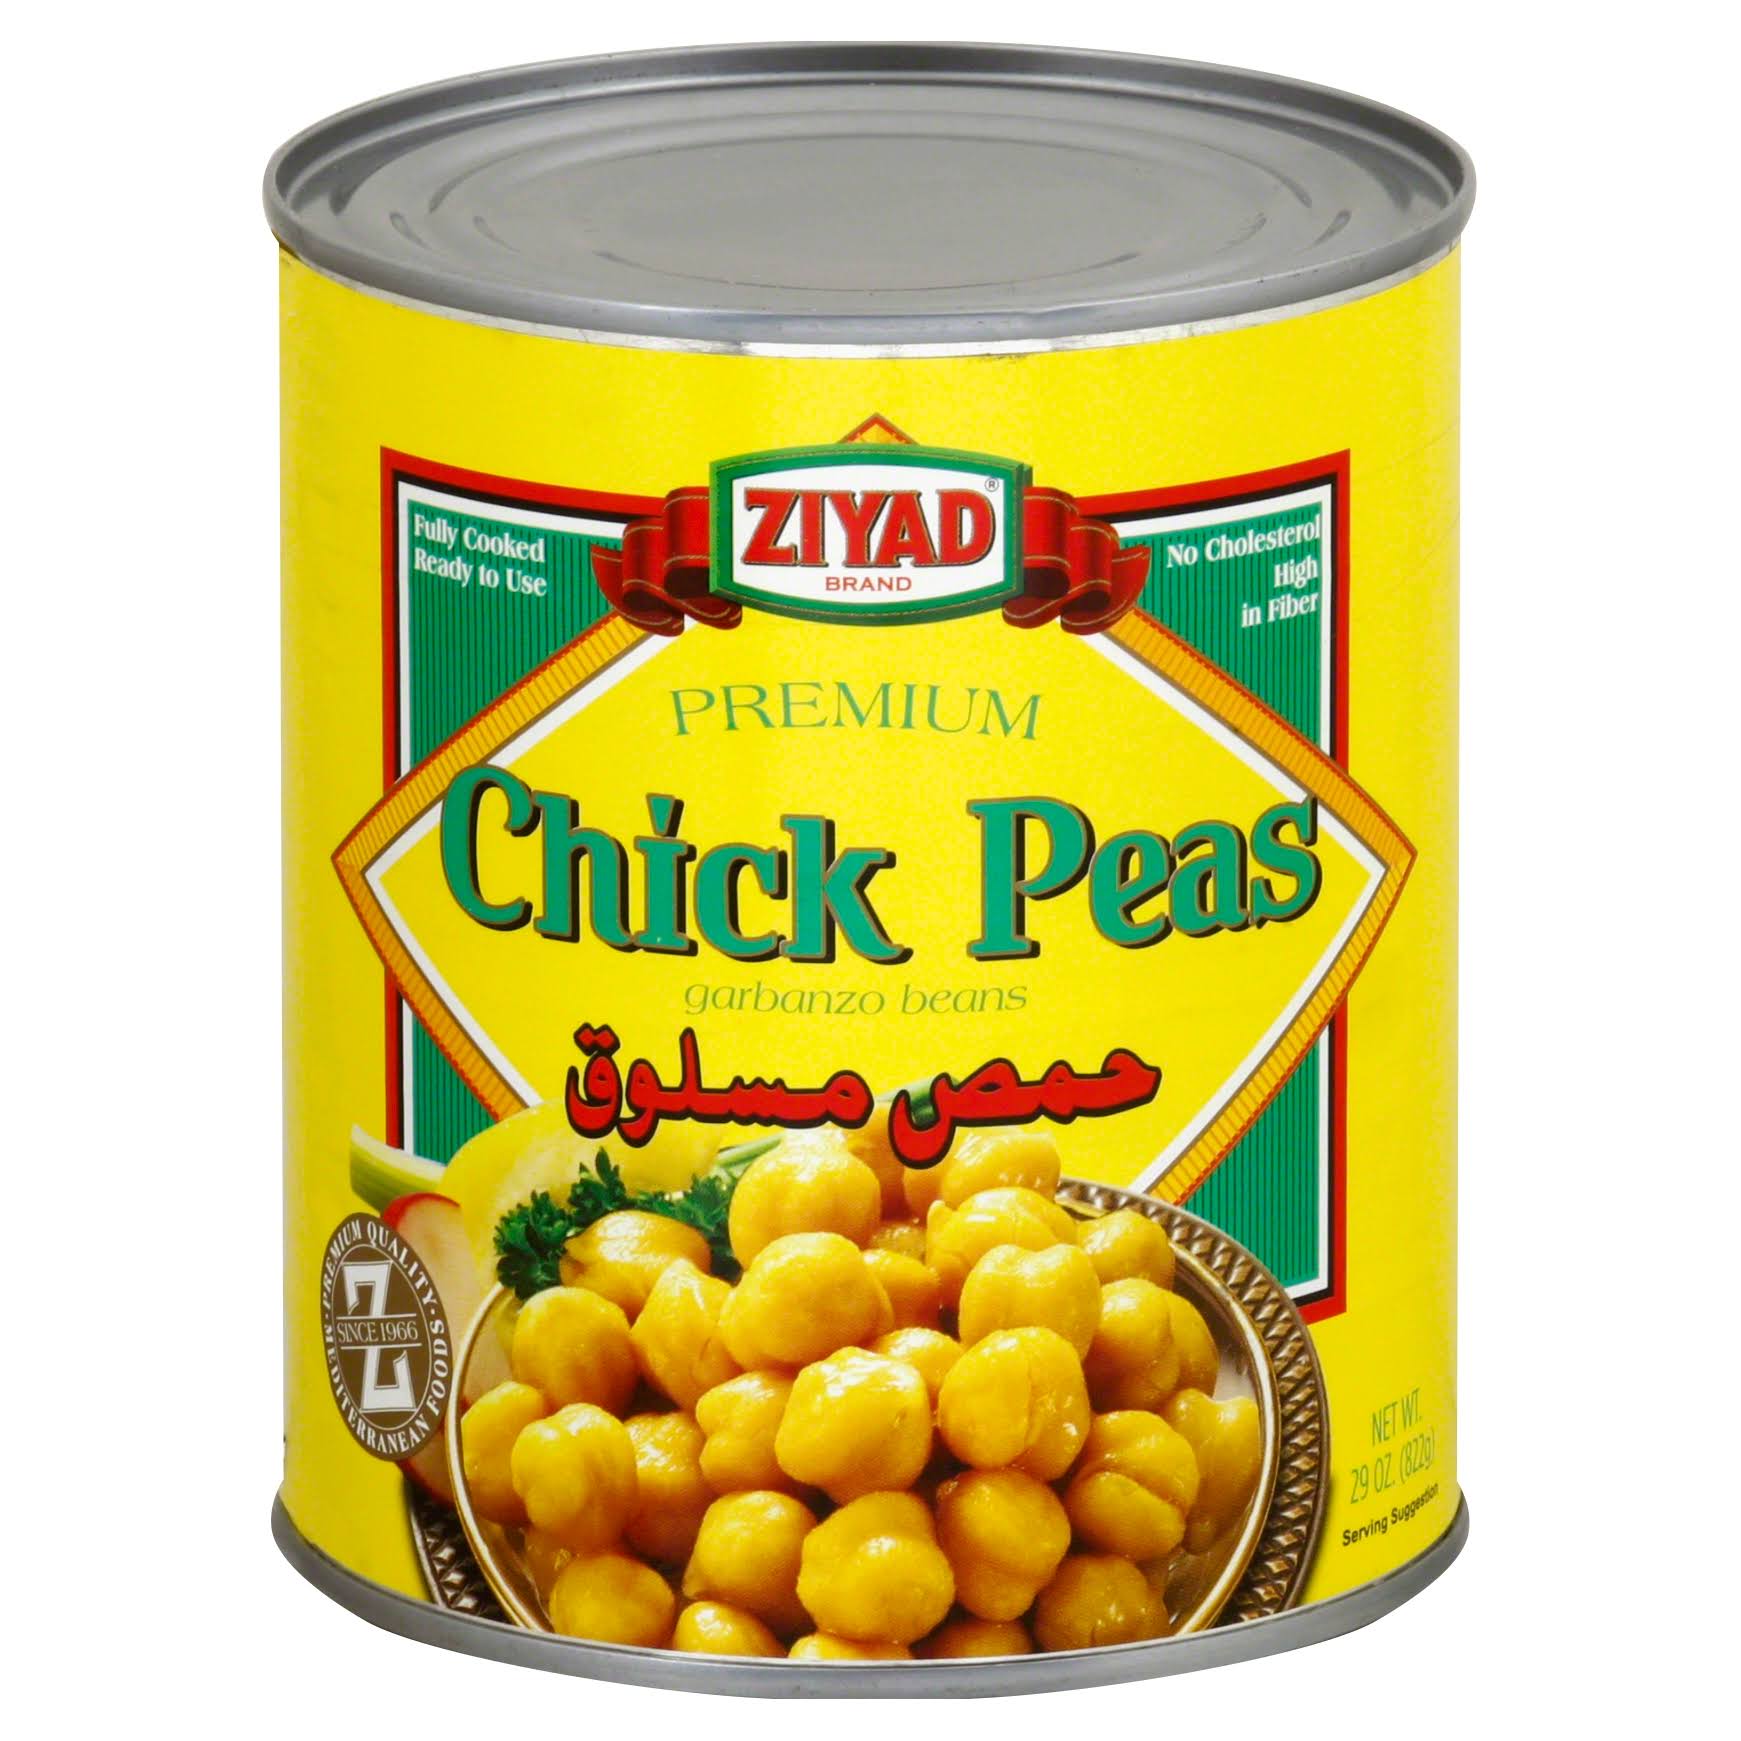 Ziyad Chick Peas - 29oz